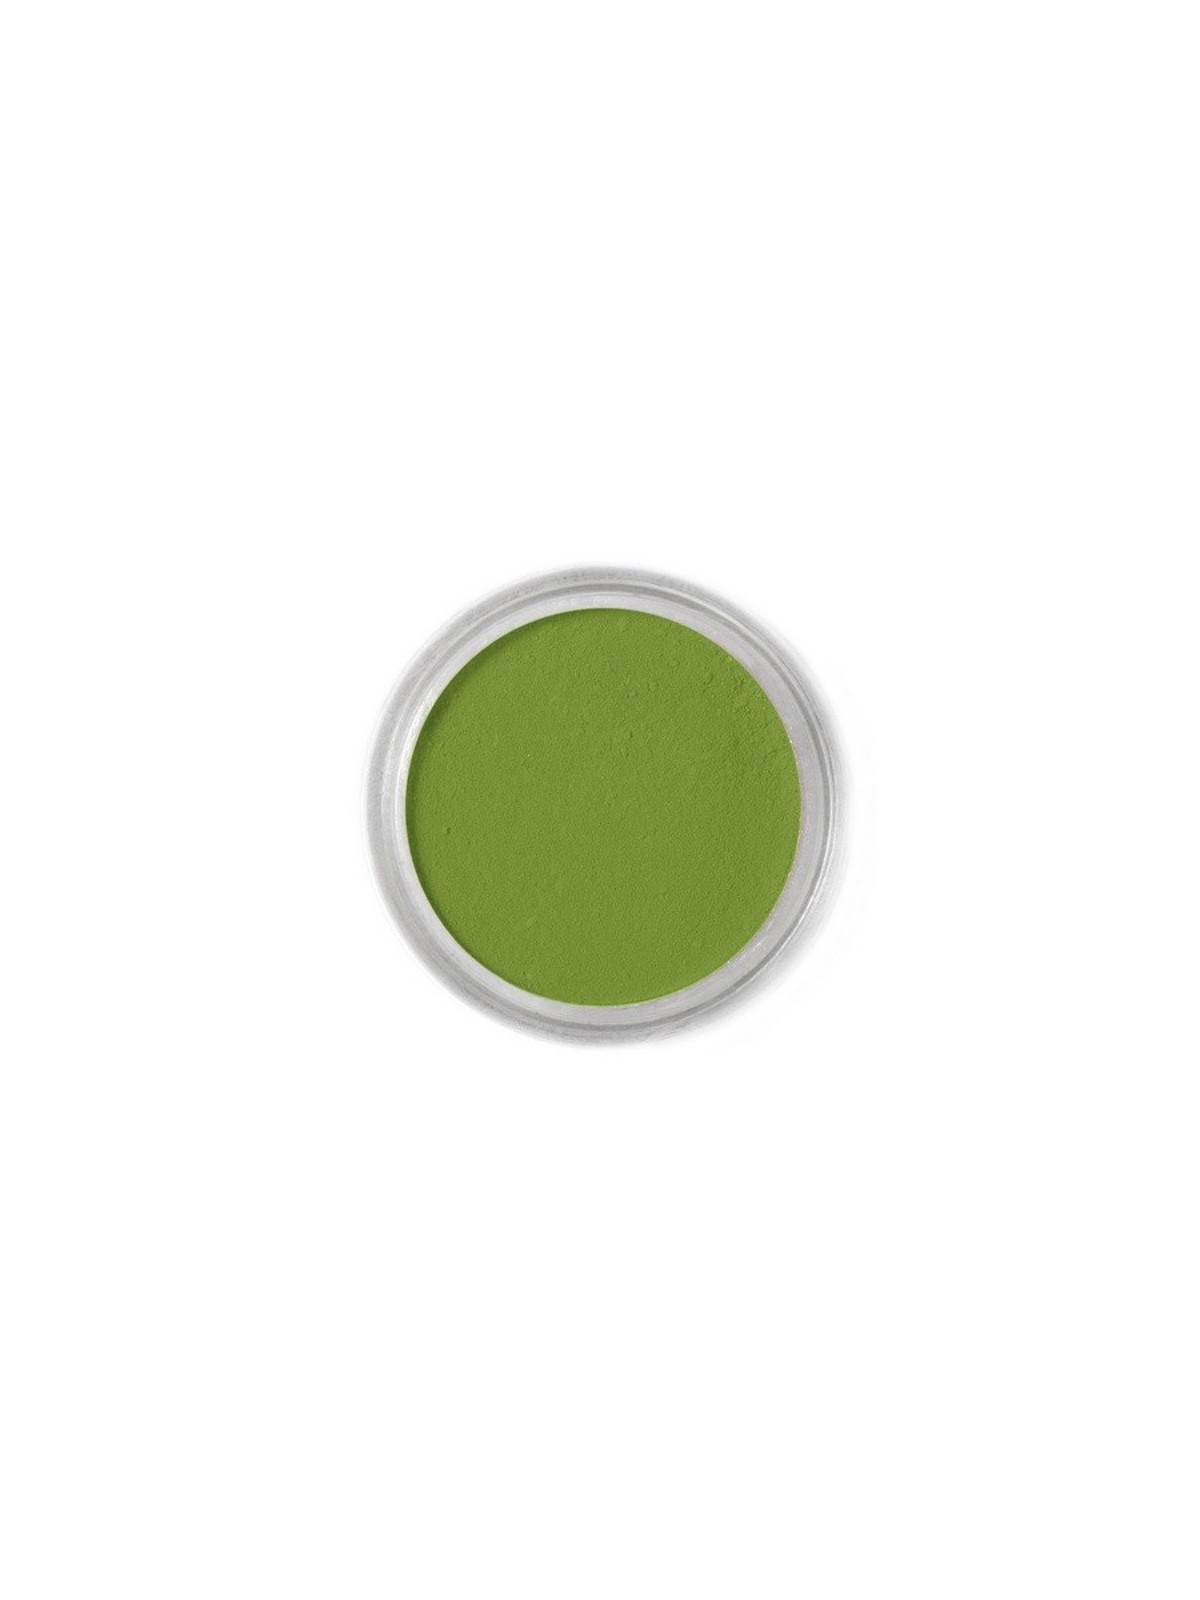 Jedlá prachová farba Fractal - Moss Green (1,6 g)